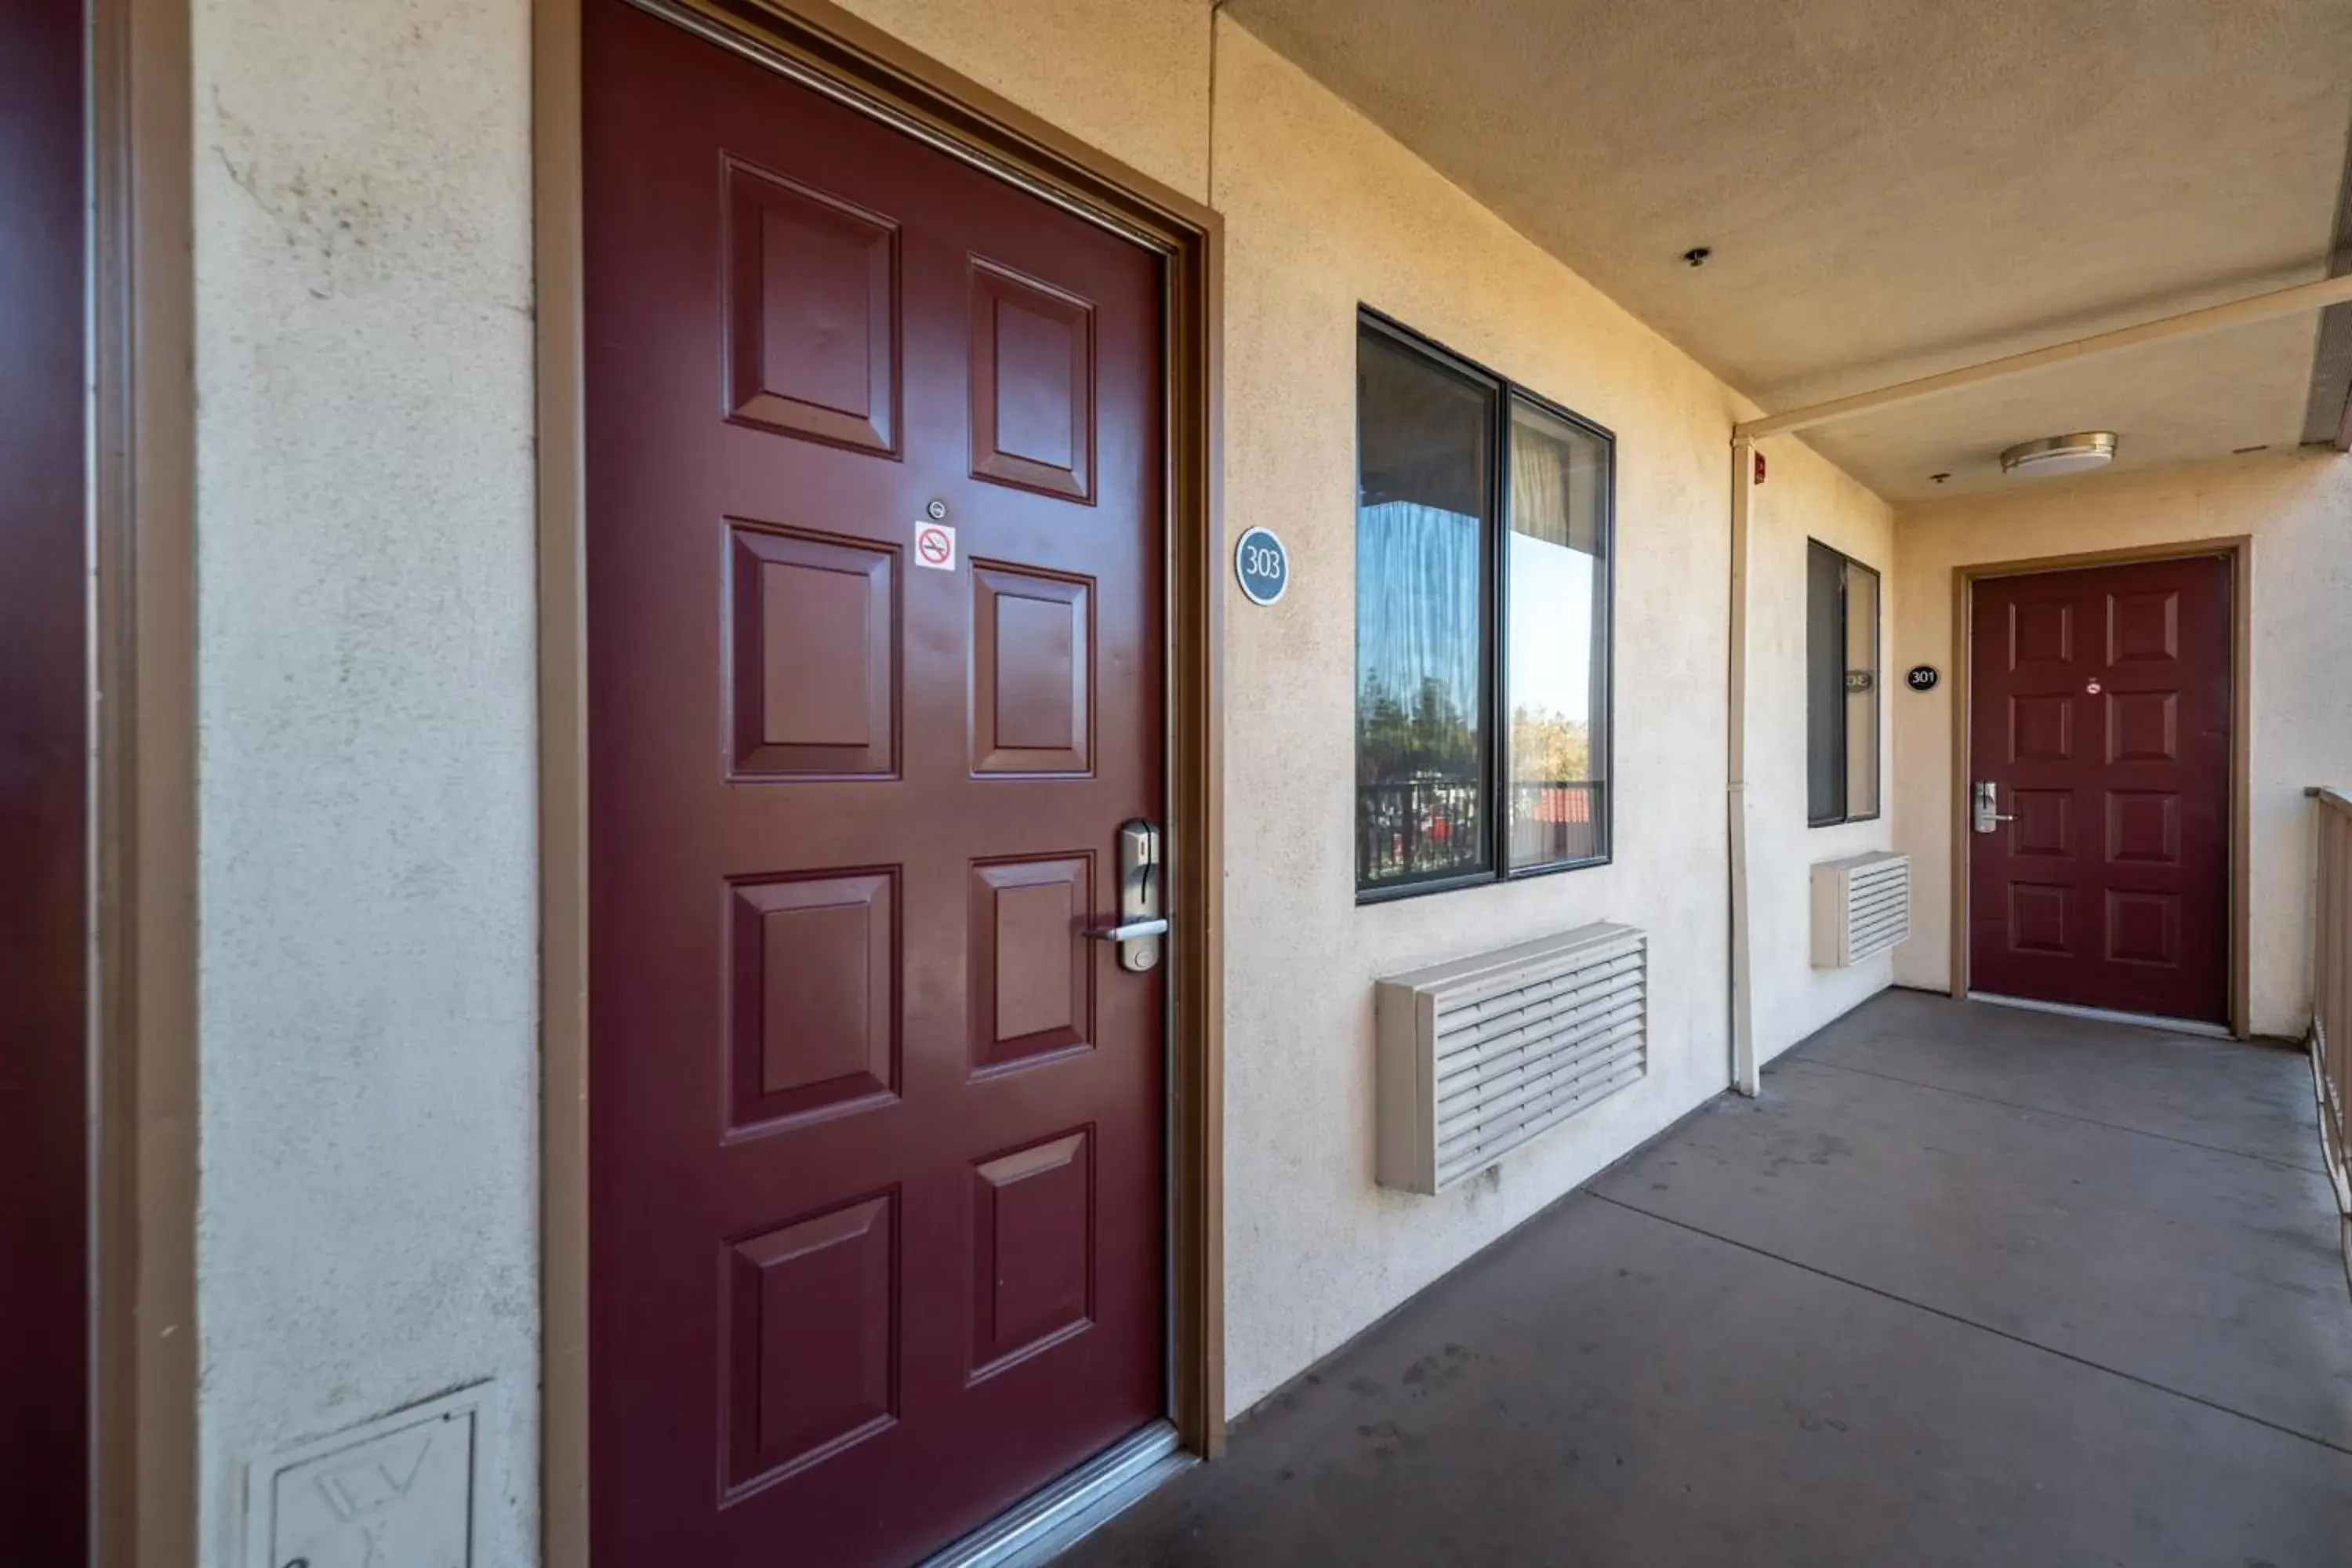 Facade/entrance in California Inn and Suites, Rancho Cordova